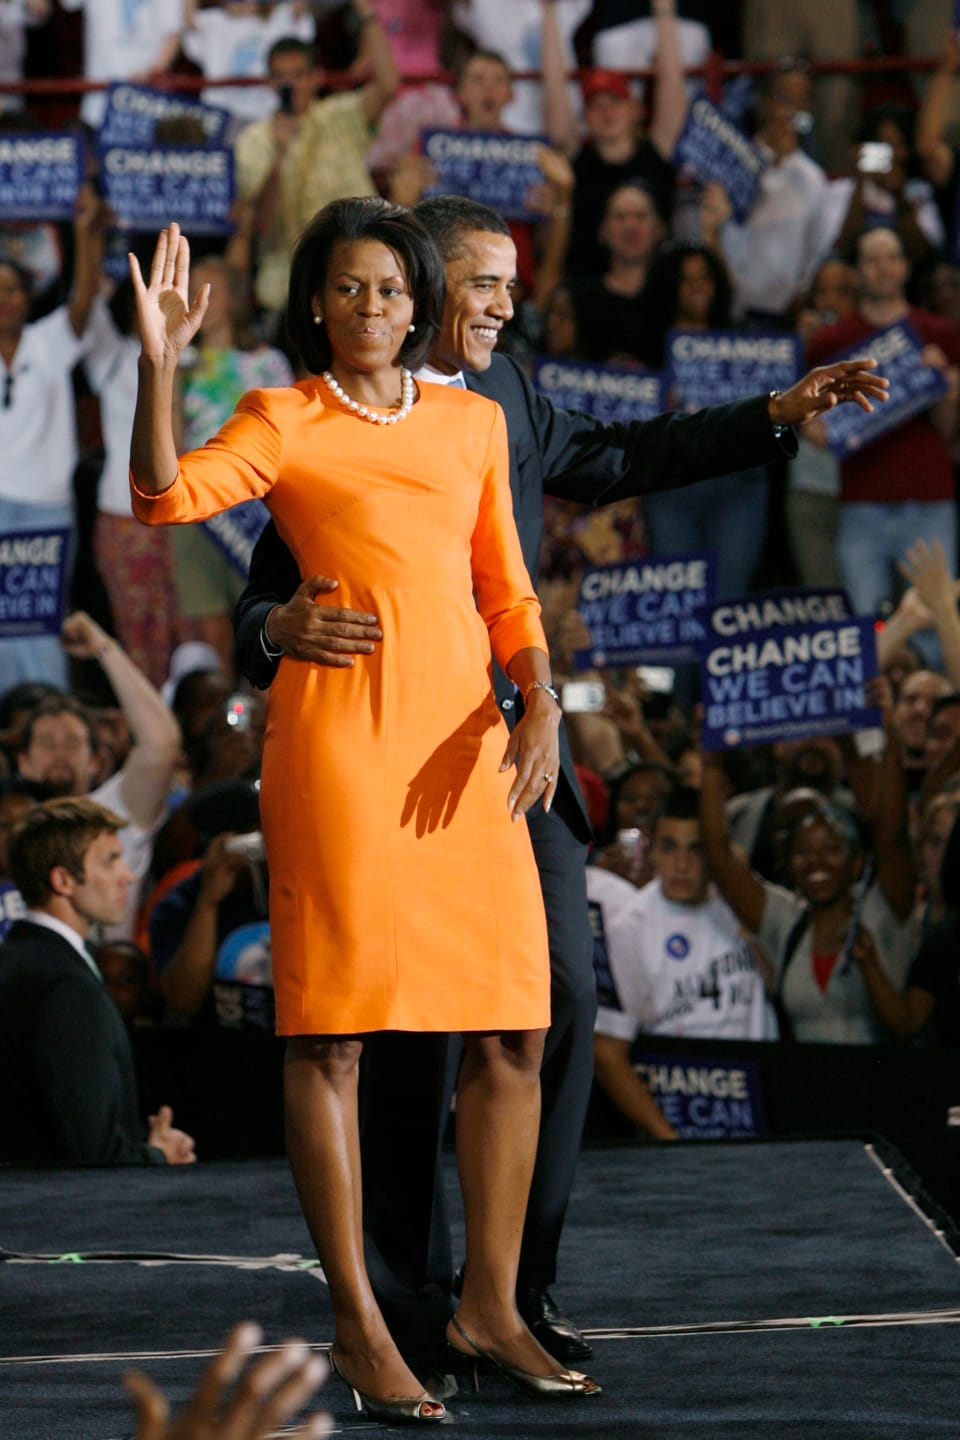 Michelle Obama in einem kurzen, orangenem Kleid winkend. Barrack Obama steht neben ihr und hält sie um die Hüfte.